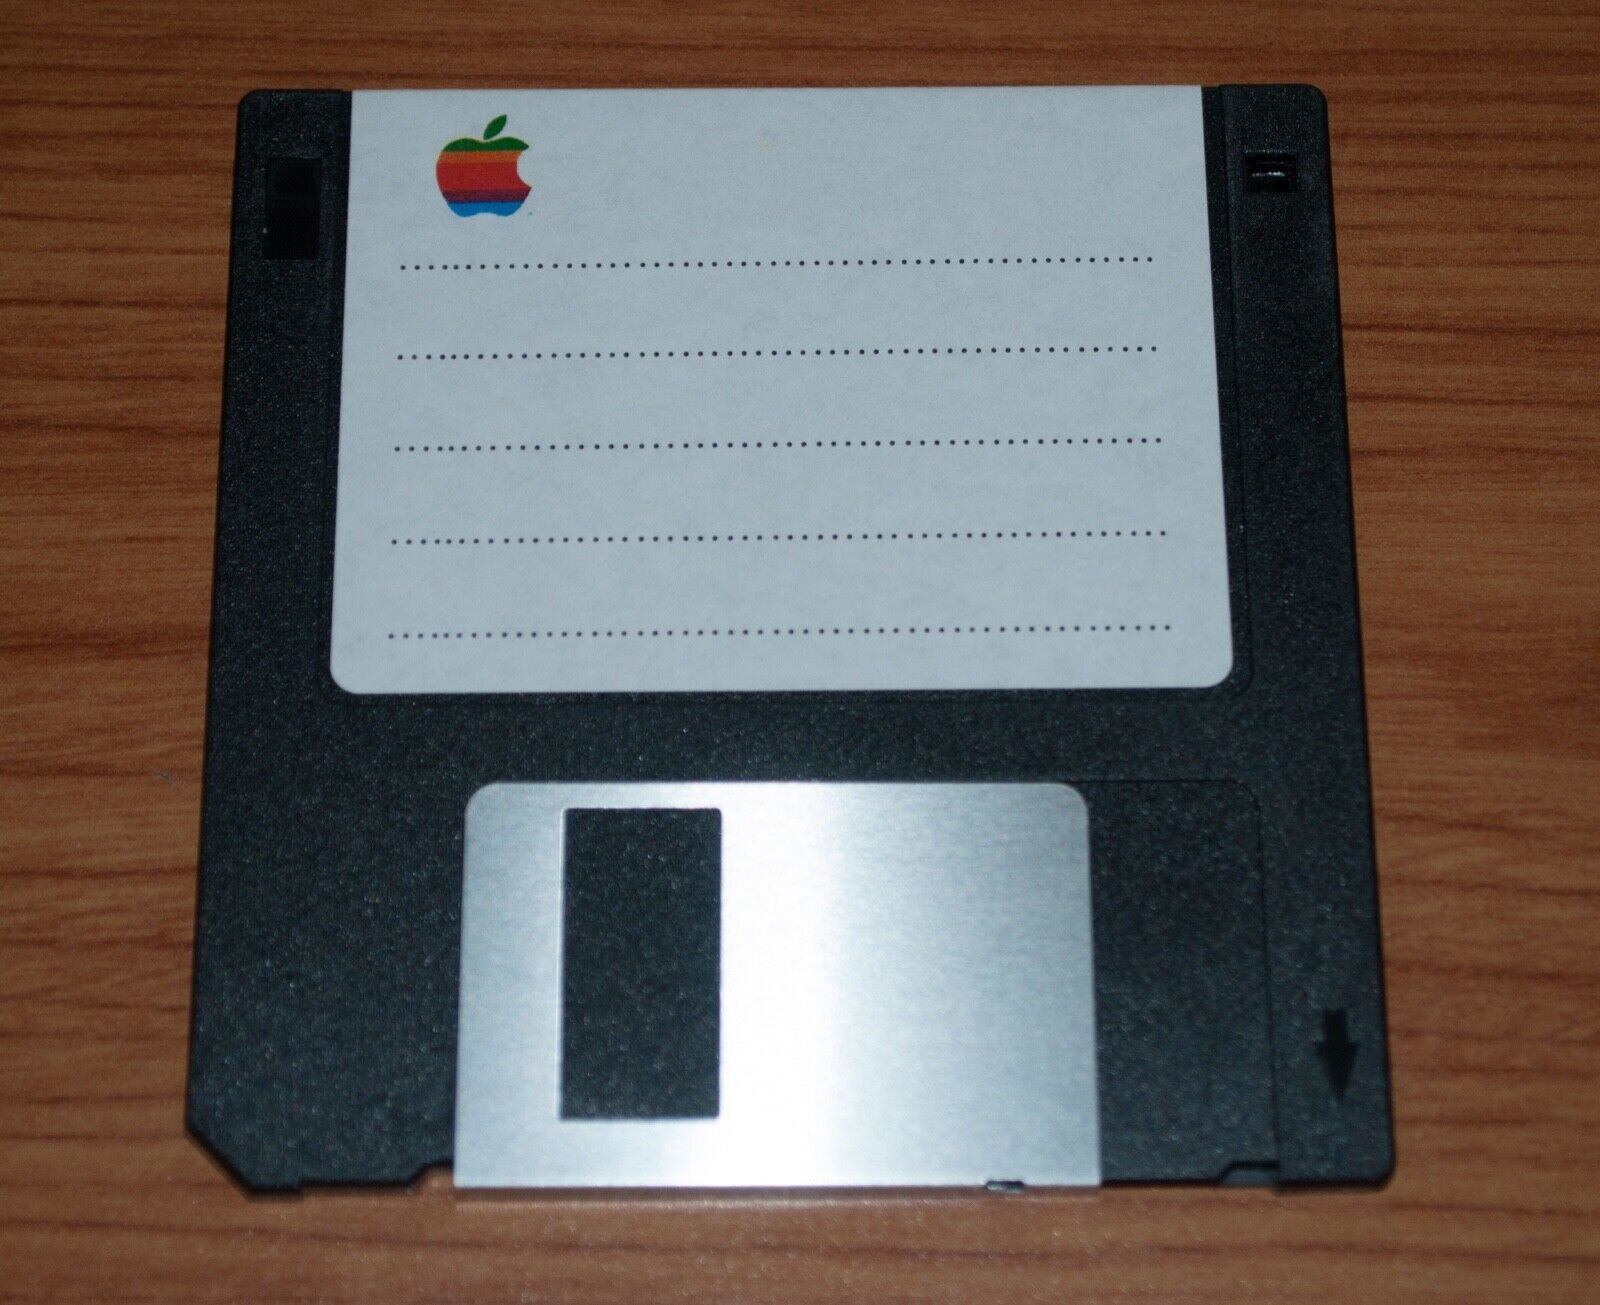 Apple Macintosh Games Bundle Disk 1 for Vintage Classic Mac - 800K disk